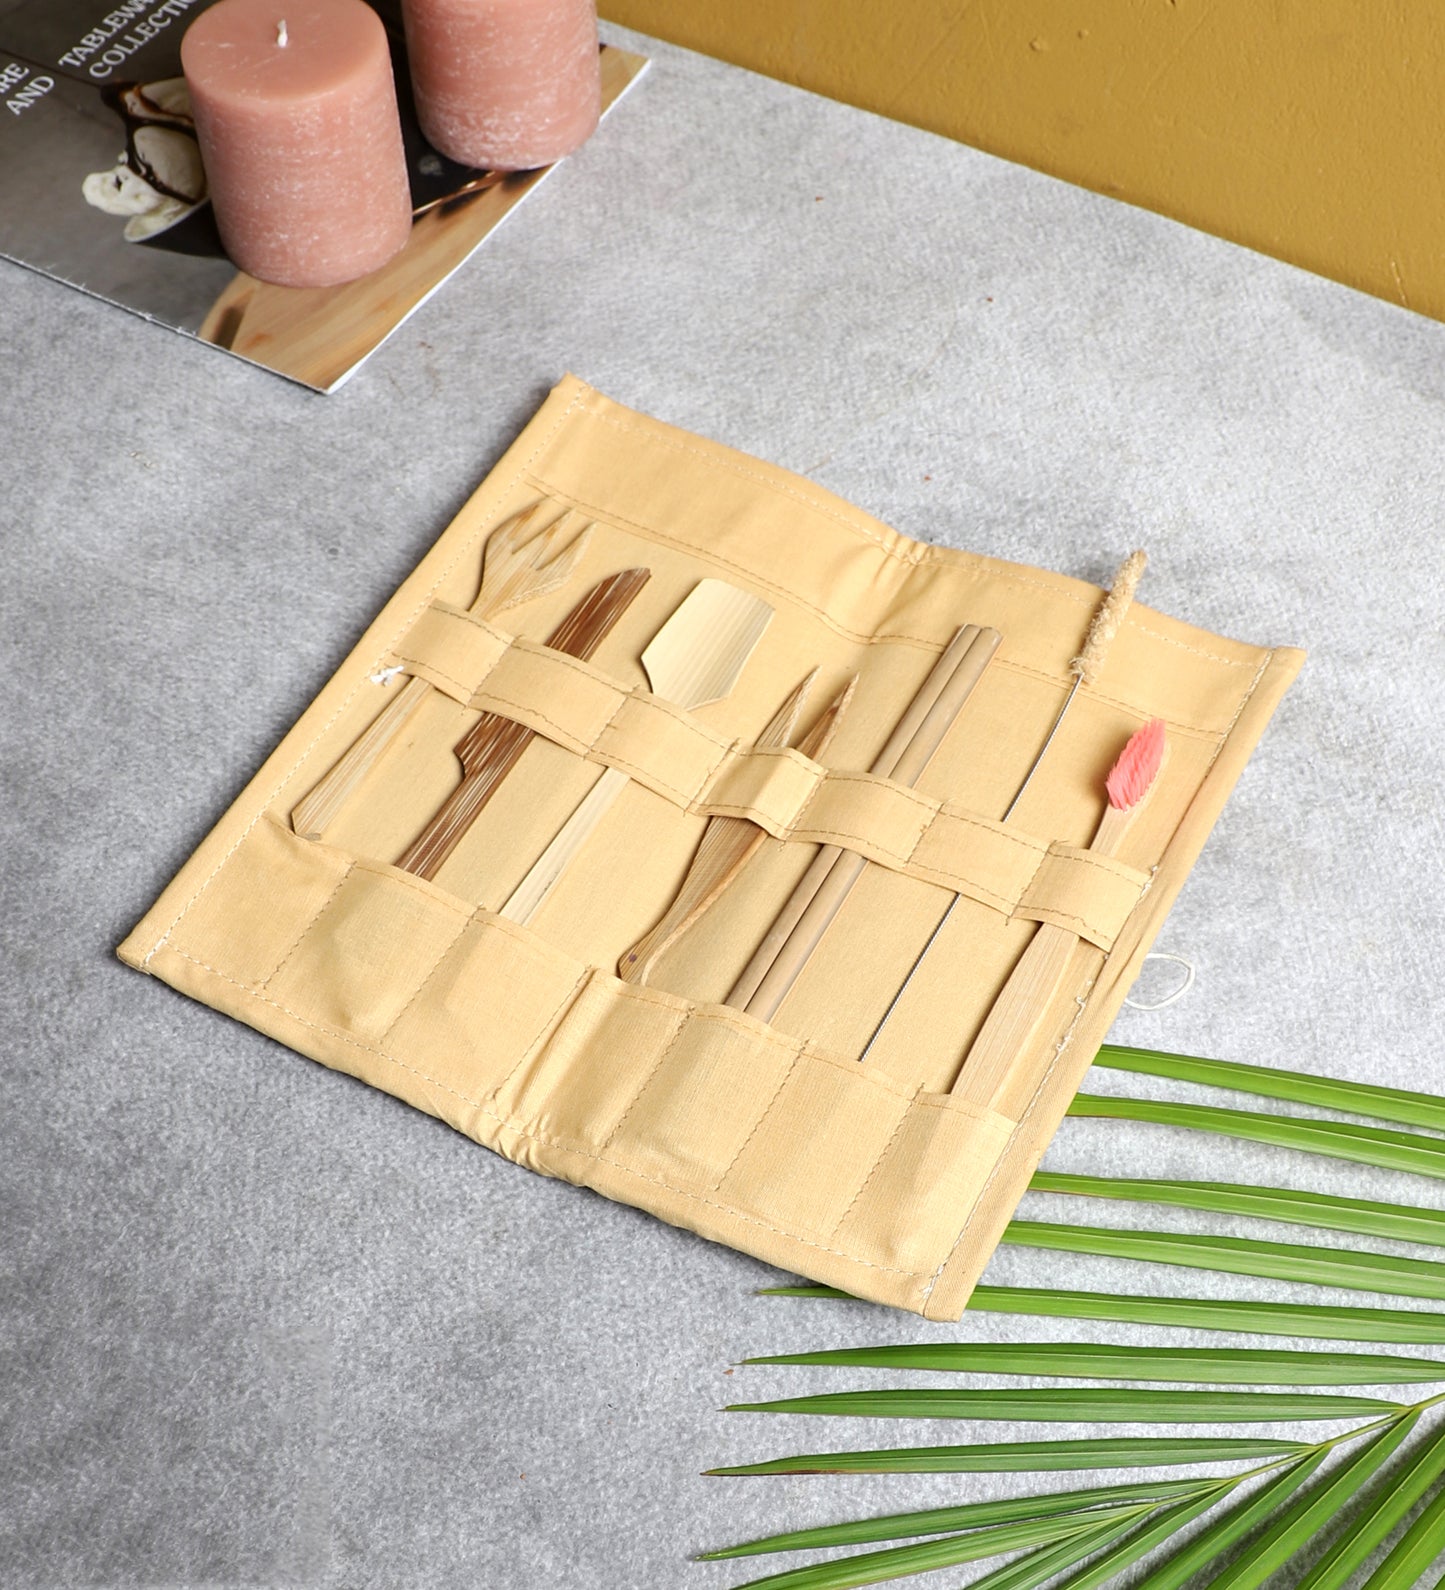 Ensemble utilitaire en bambou avec pochette. Comprend une brosse à dents, une paille, des couverts et un nettoyant.